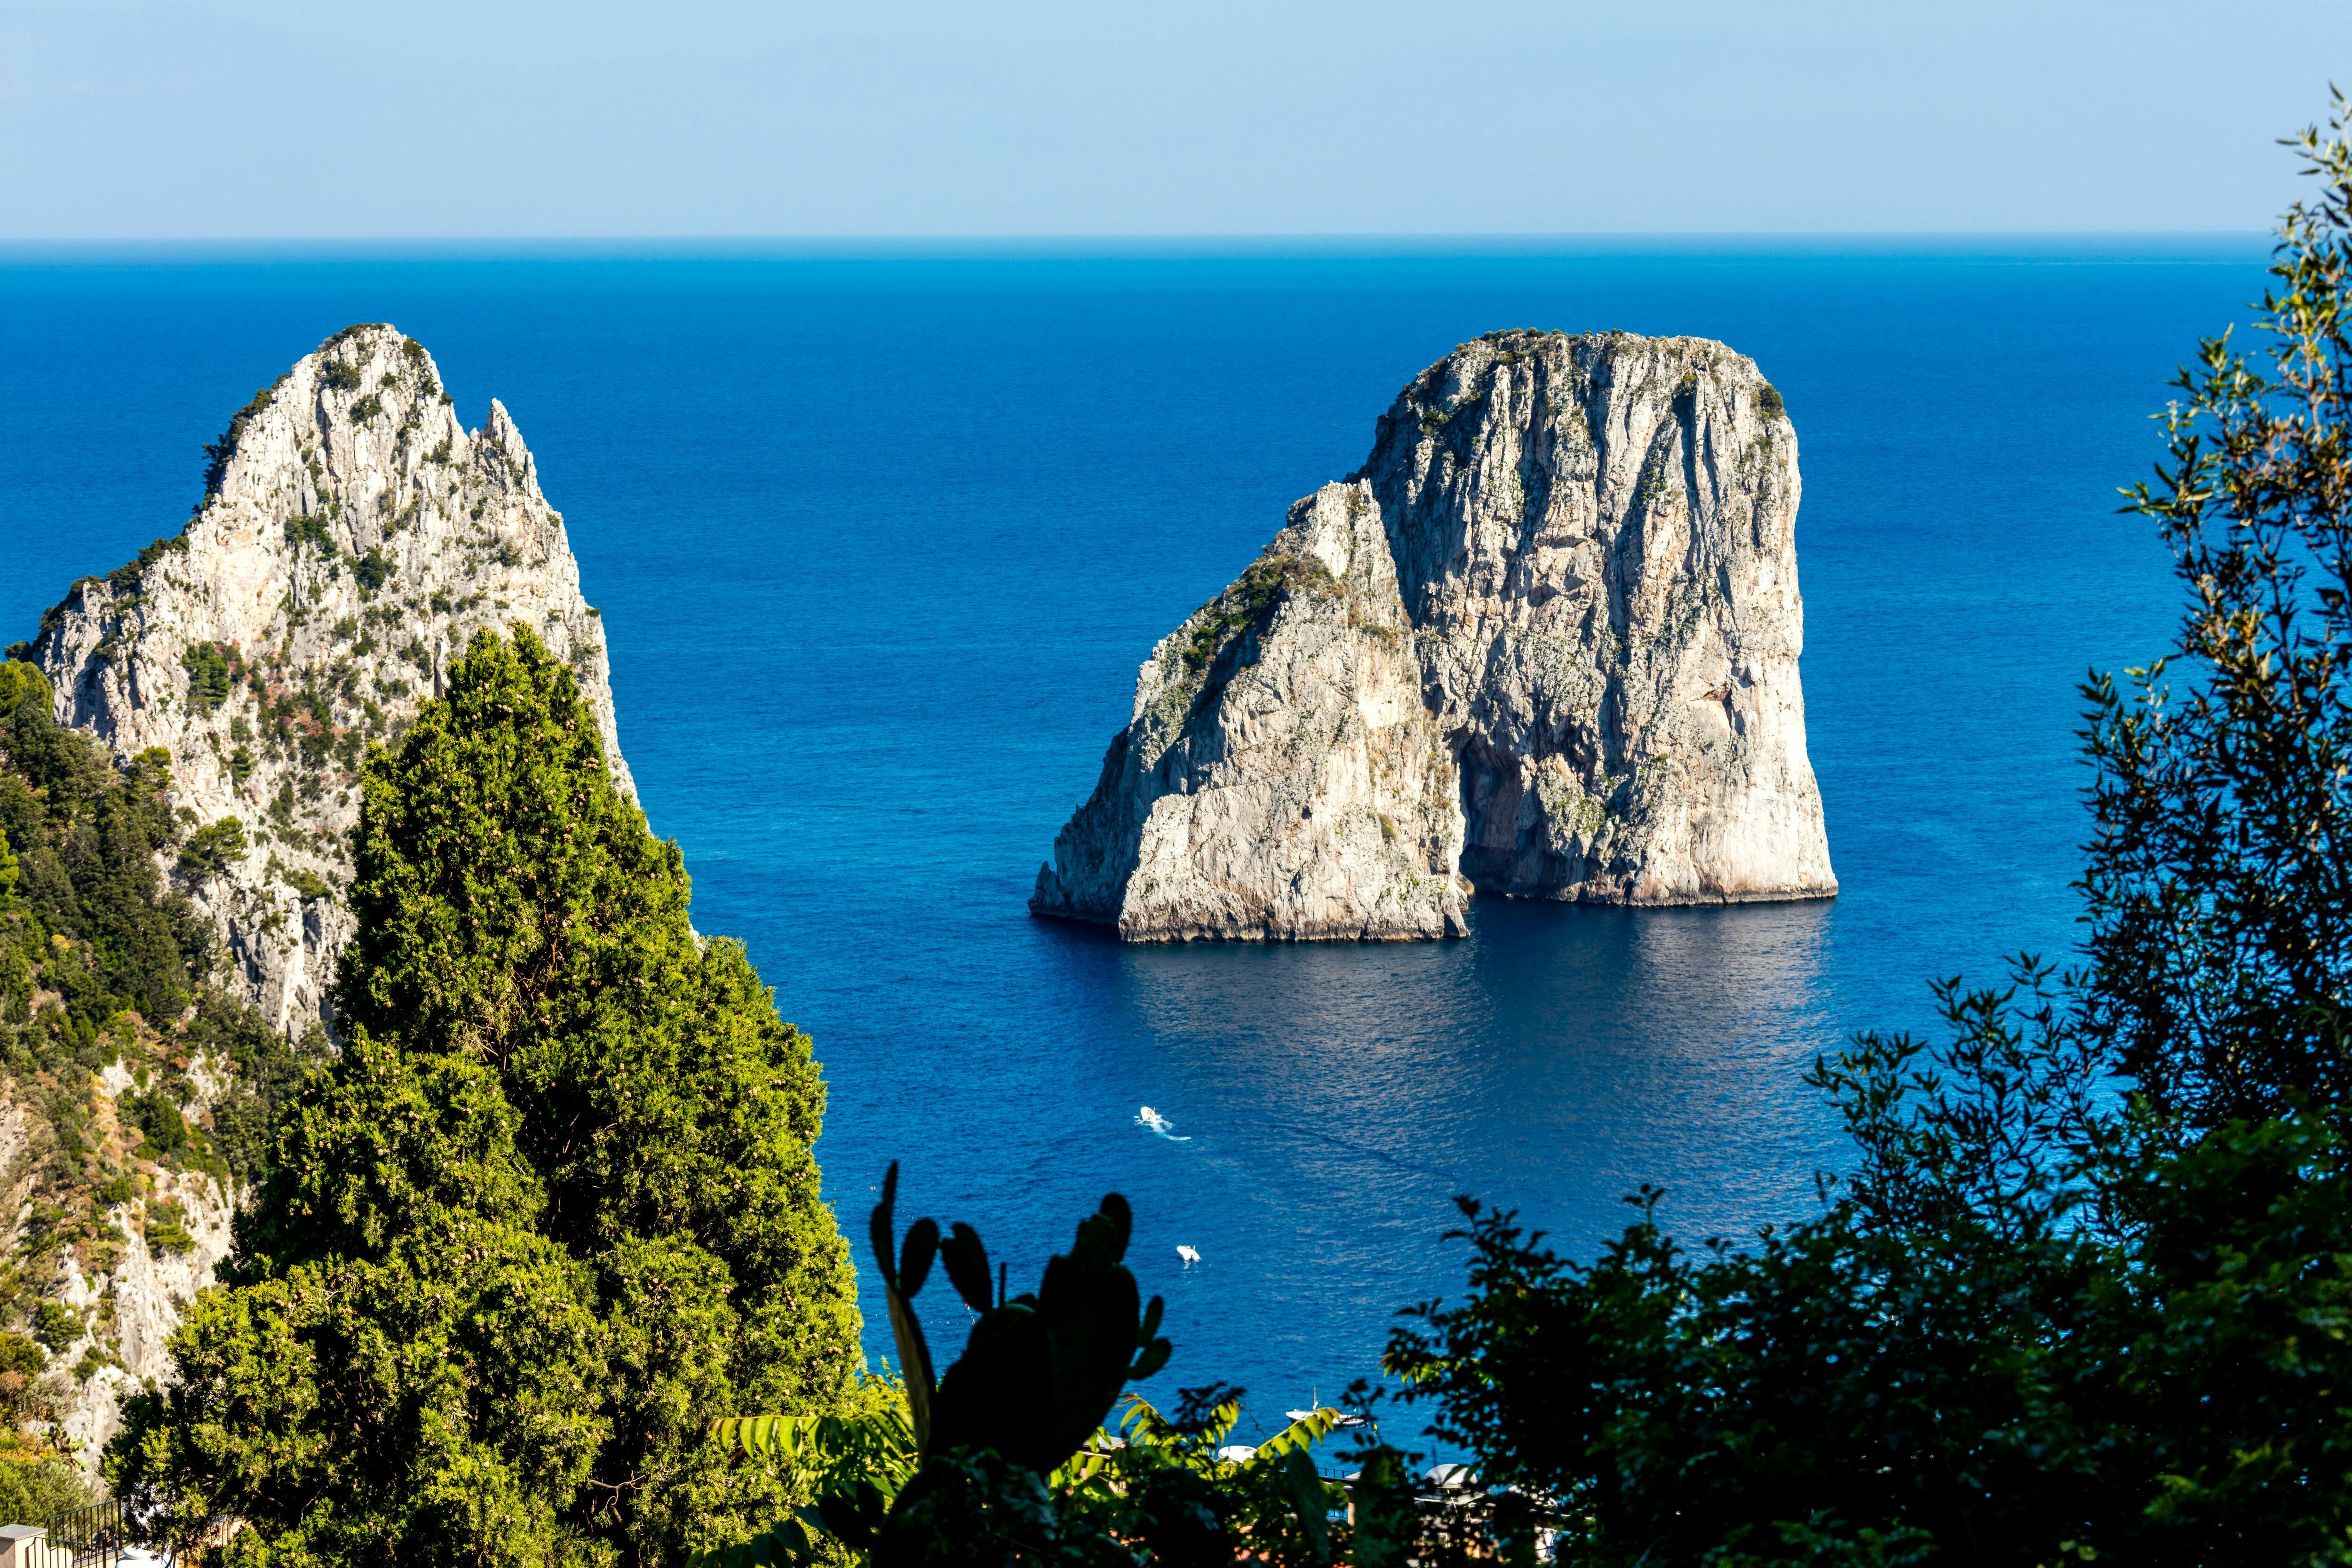 Capri und Anacapri Select mit geführtem Rundgang